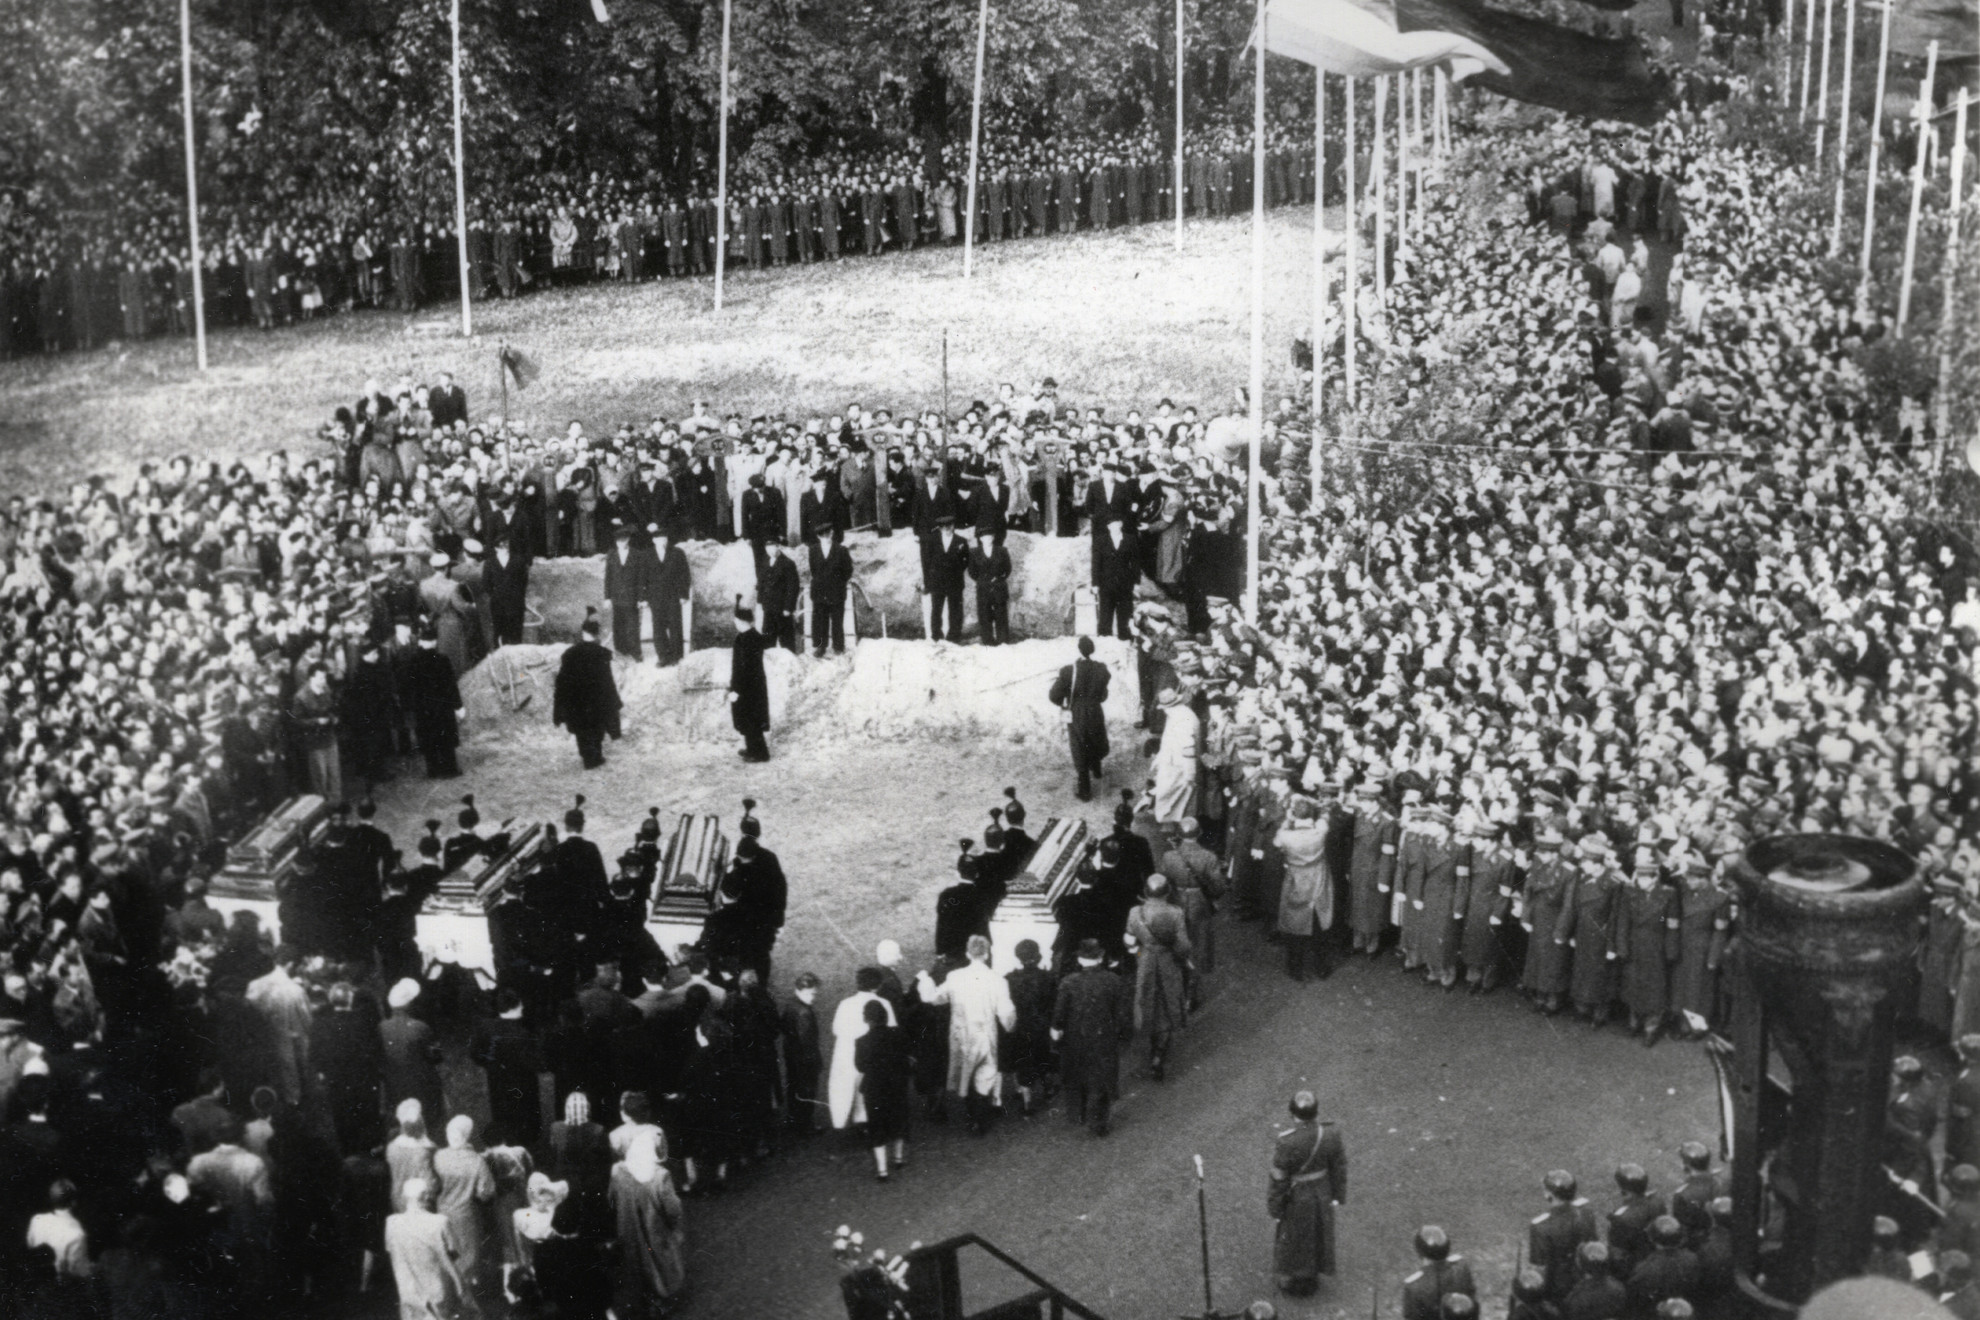 Rajk László, Pálffy György, Szőnyi Tibor és Szalai András újratemetése 1956. október 6-án a Fiumei úti Nemzeti Sírkertben (Kerepesi temető)